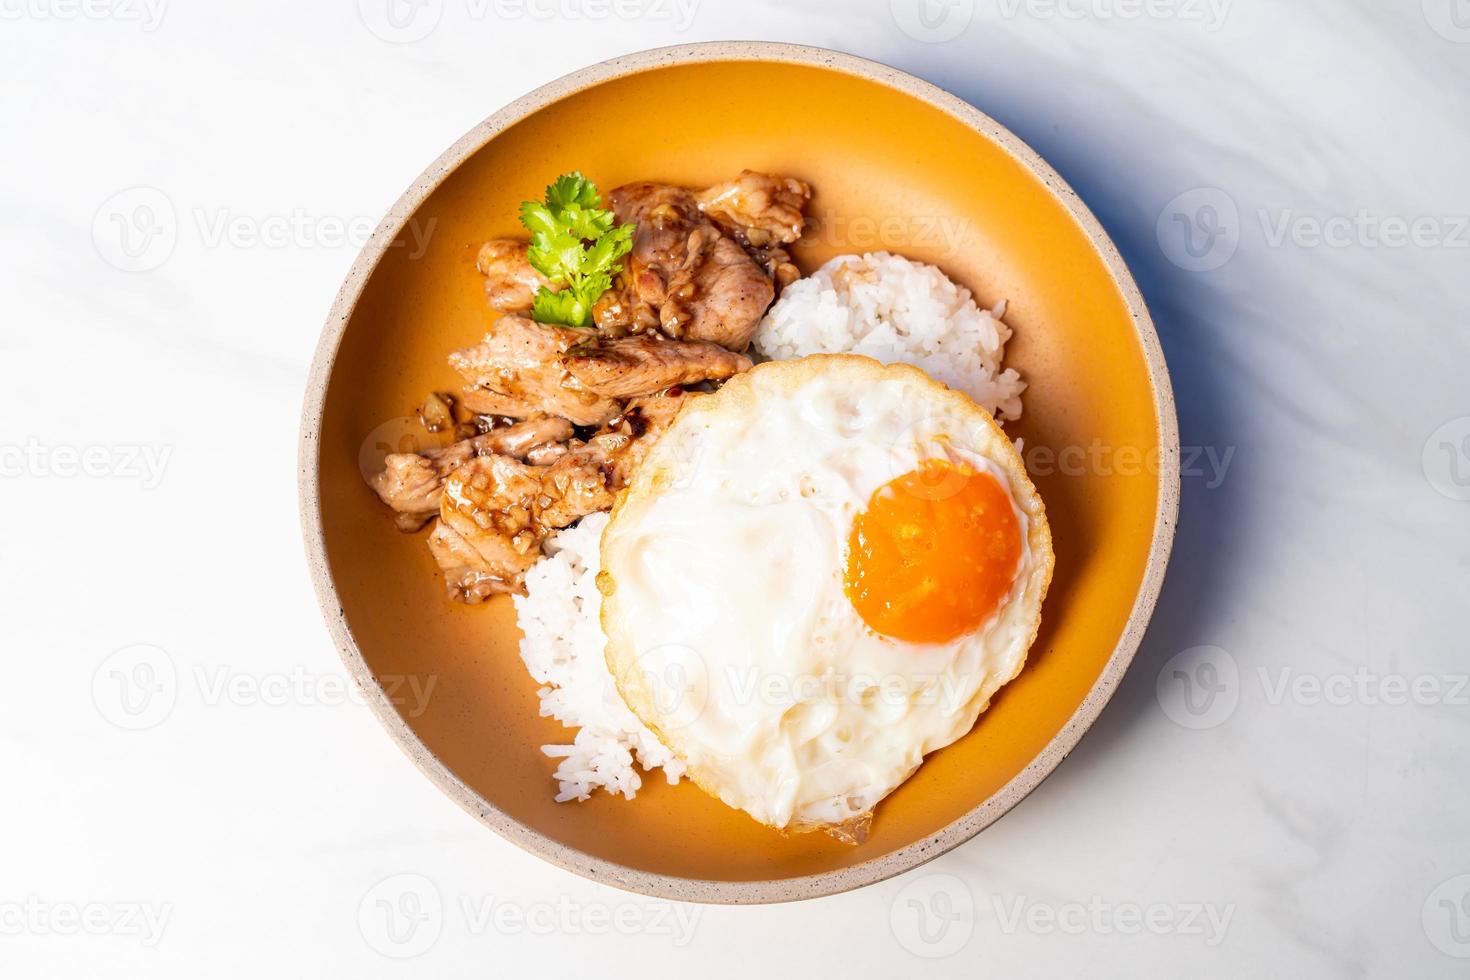 arroz con pollo al ajillo y huevo frito foto